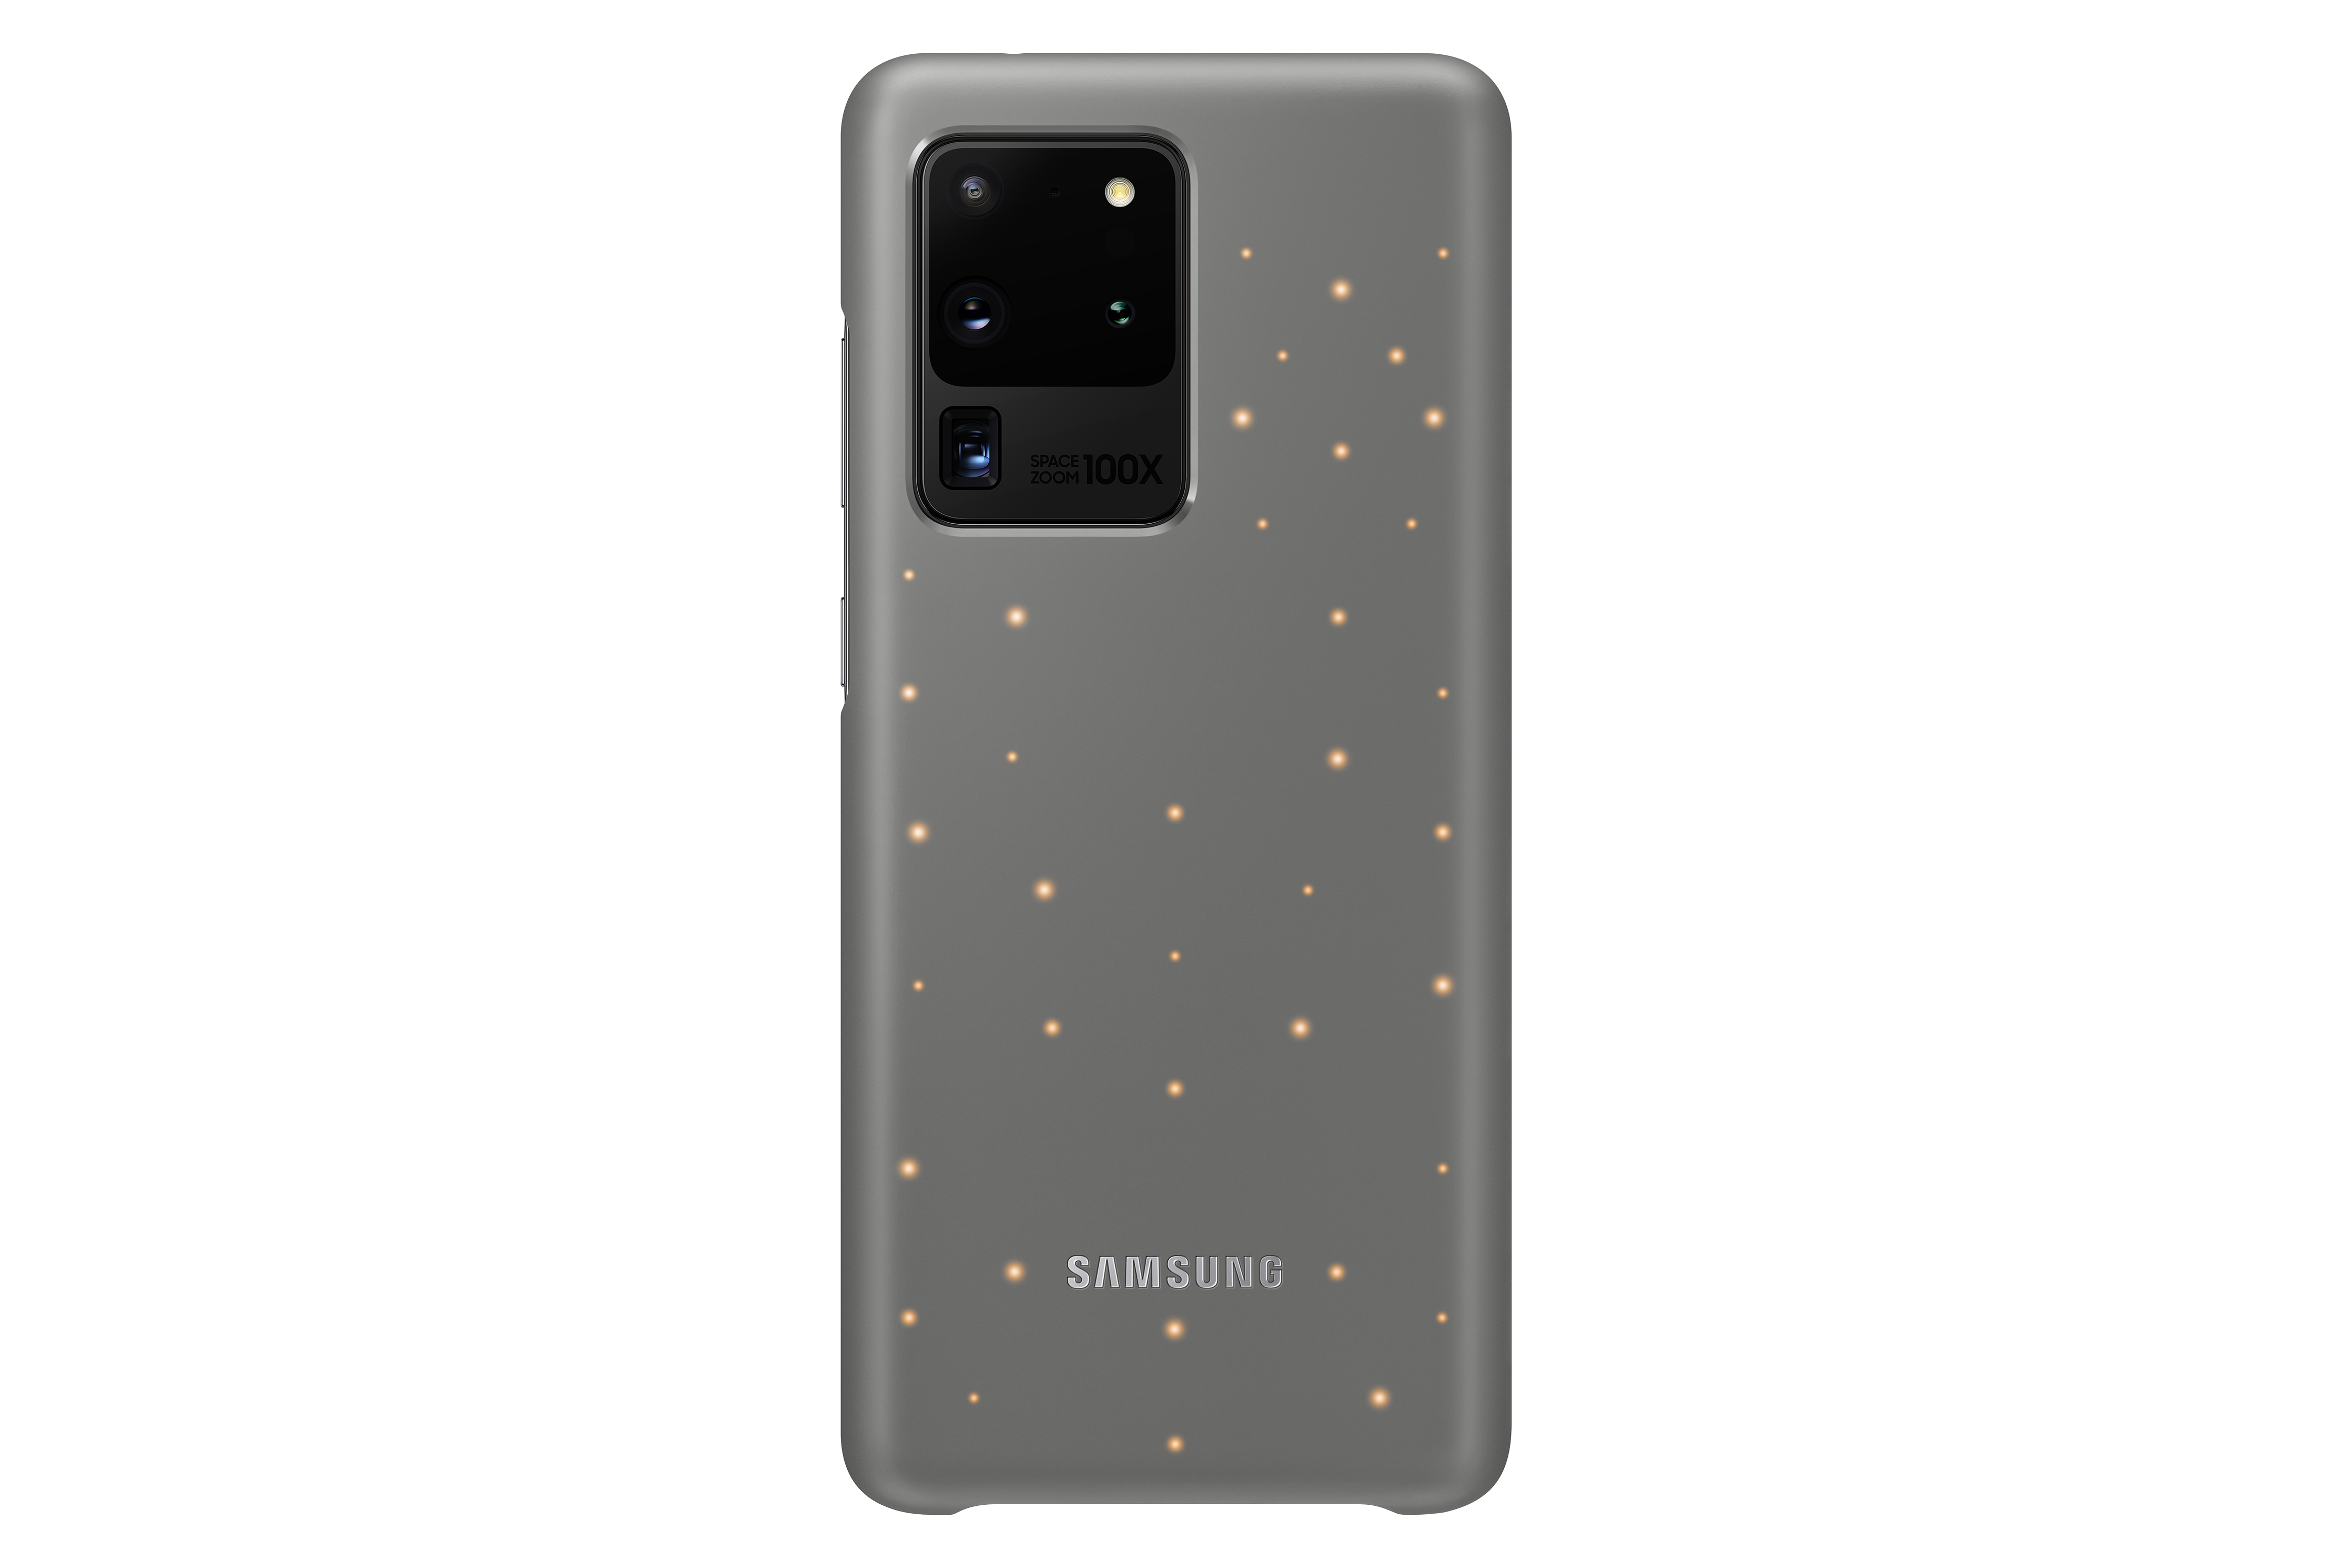 Samsung odhaluje nové příslušenství pro Galaxy S20, S20+ a S20 Ultra 5G